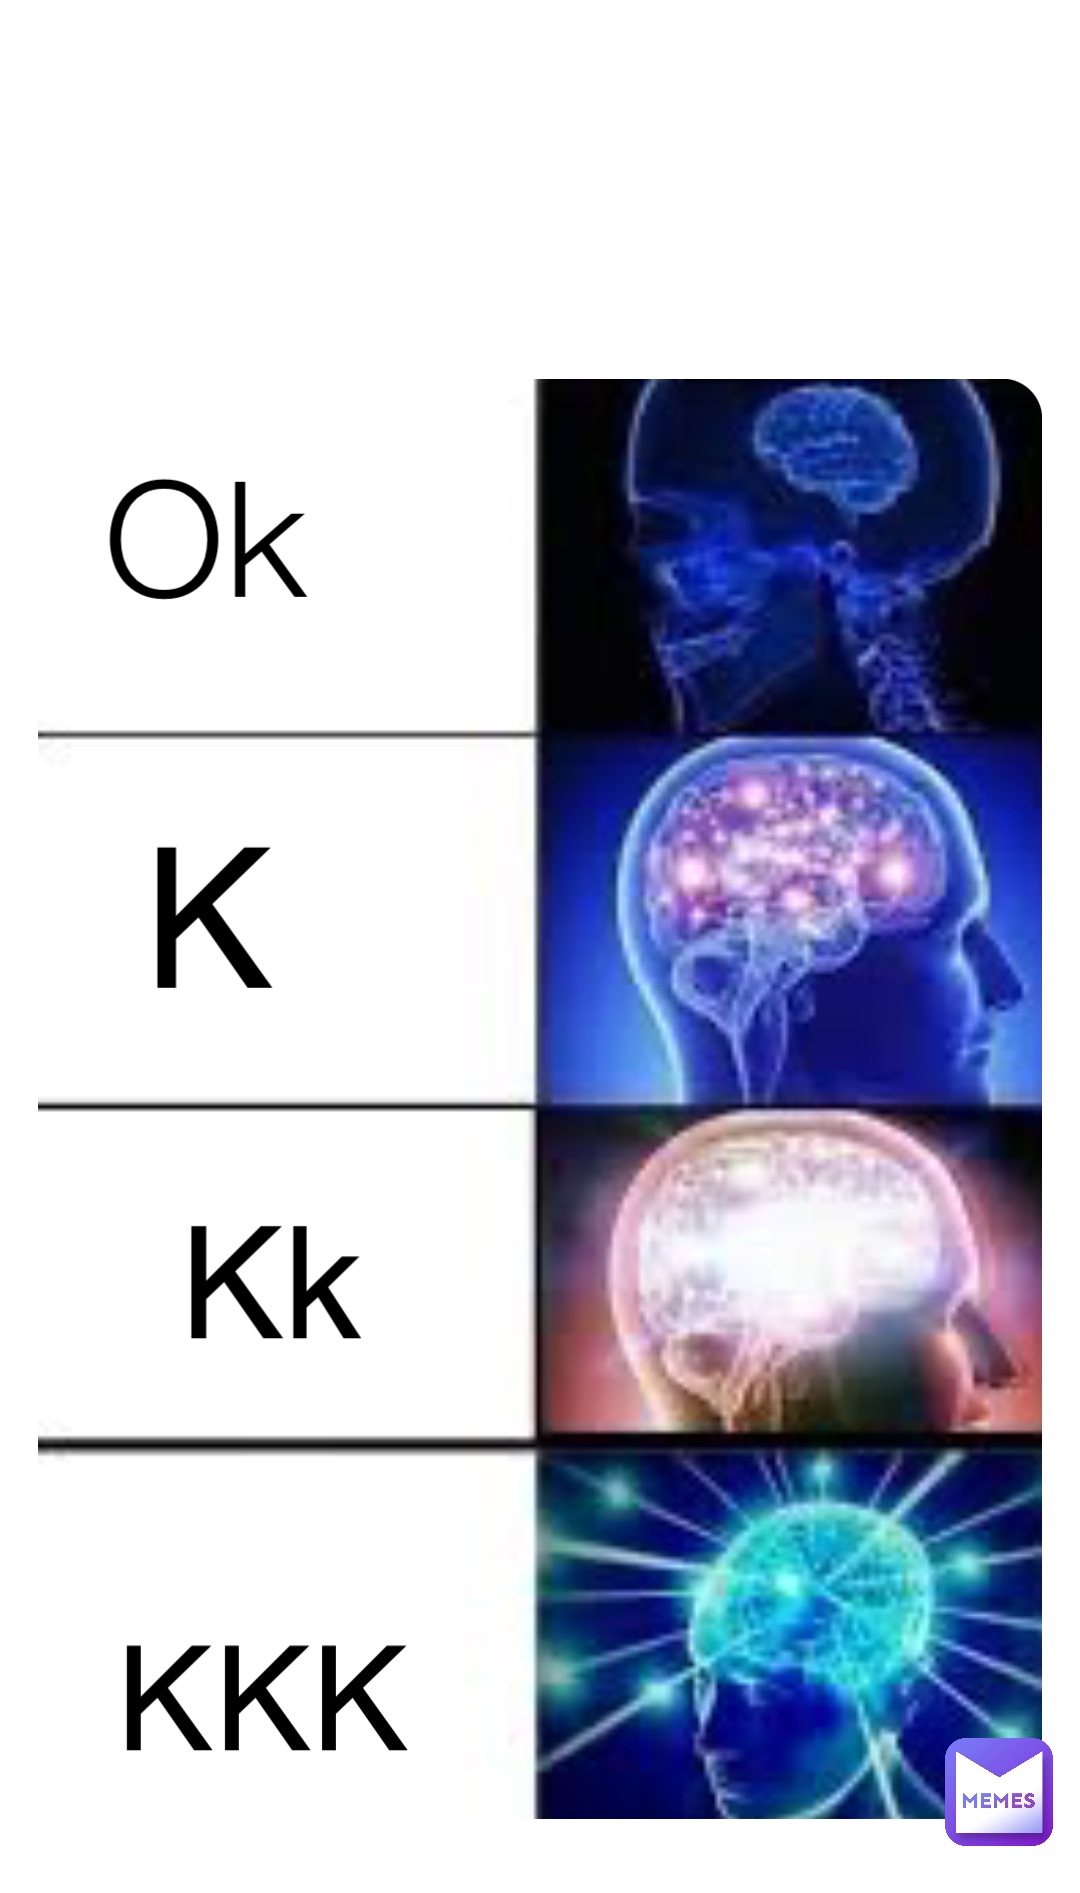 Ok K Kk KKK